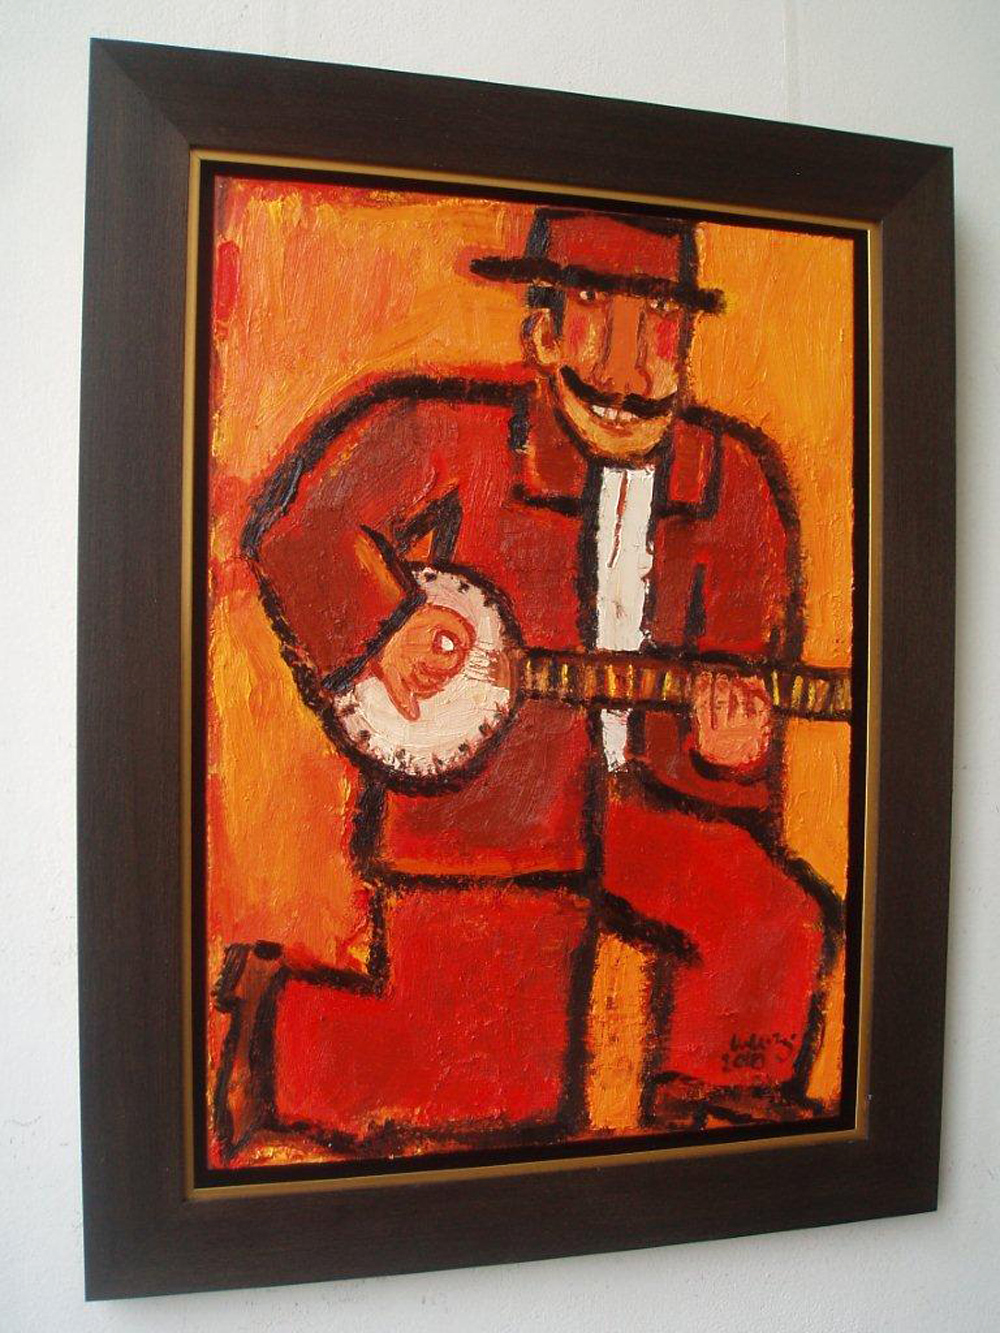 Krzysztof Kokoryn - Banjo player (n/a | Größe: 70 x 90 cm | Preis: 9000 PLN)